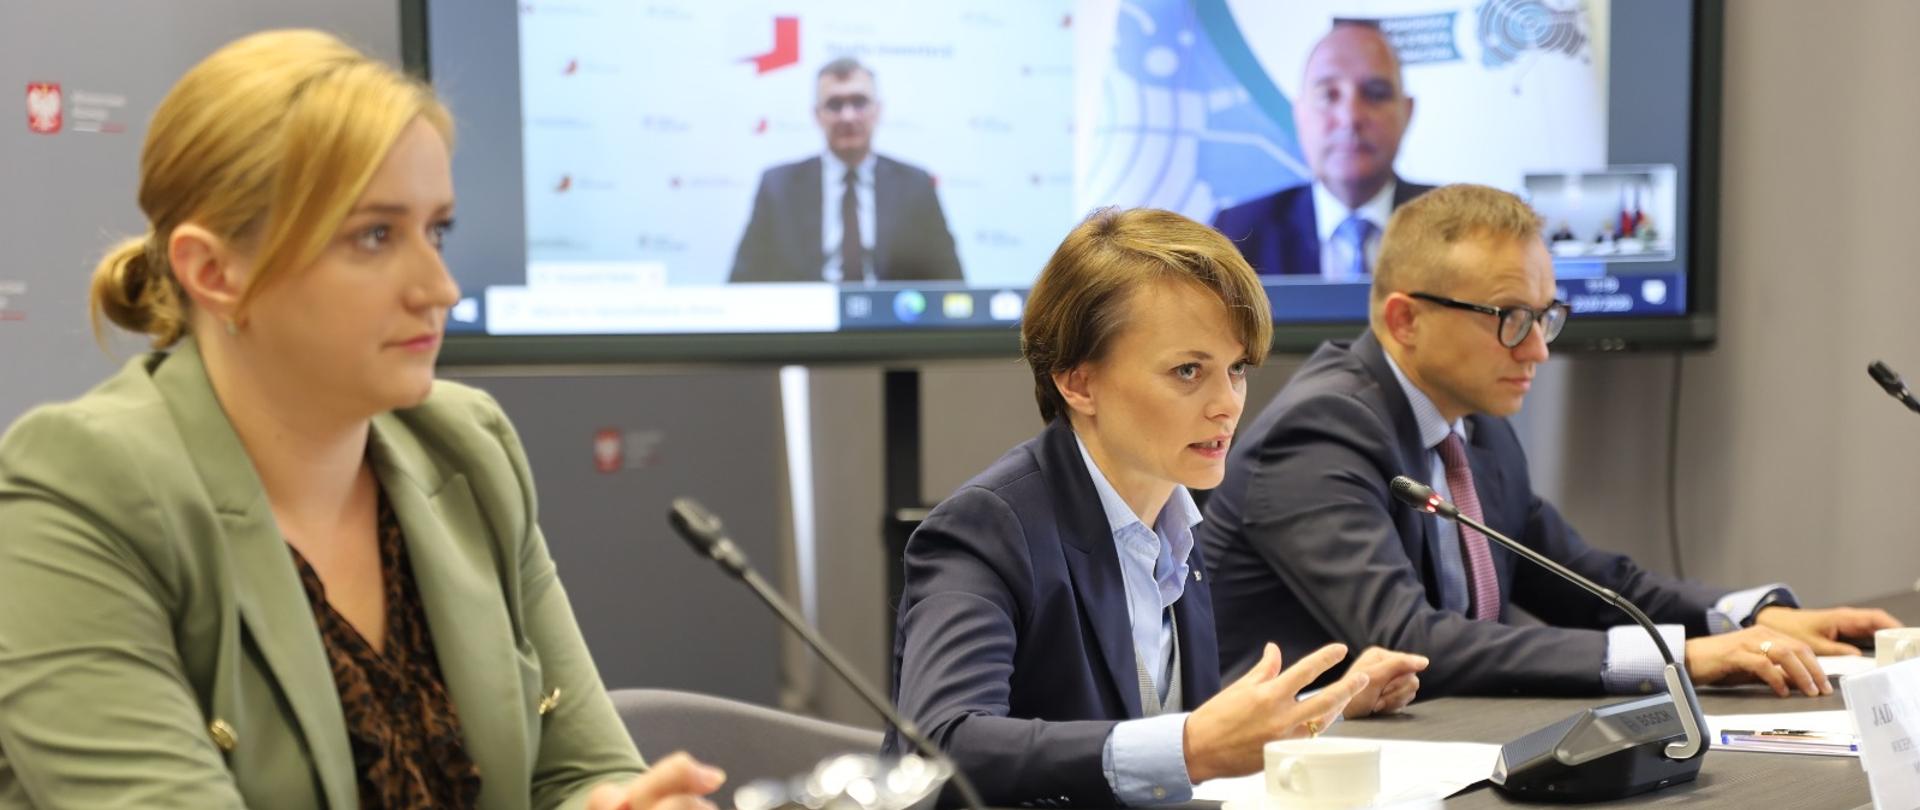 Wicepremier Jadwiga Emilewicz, wiceminister rozwoju Olga Semeniuk i wiceminister aktywów państwowych Artur Soboń na konferencji prasowej o PSI.